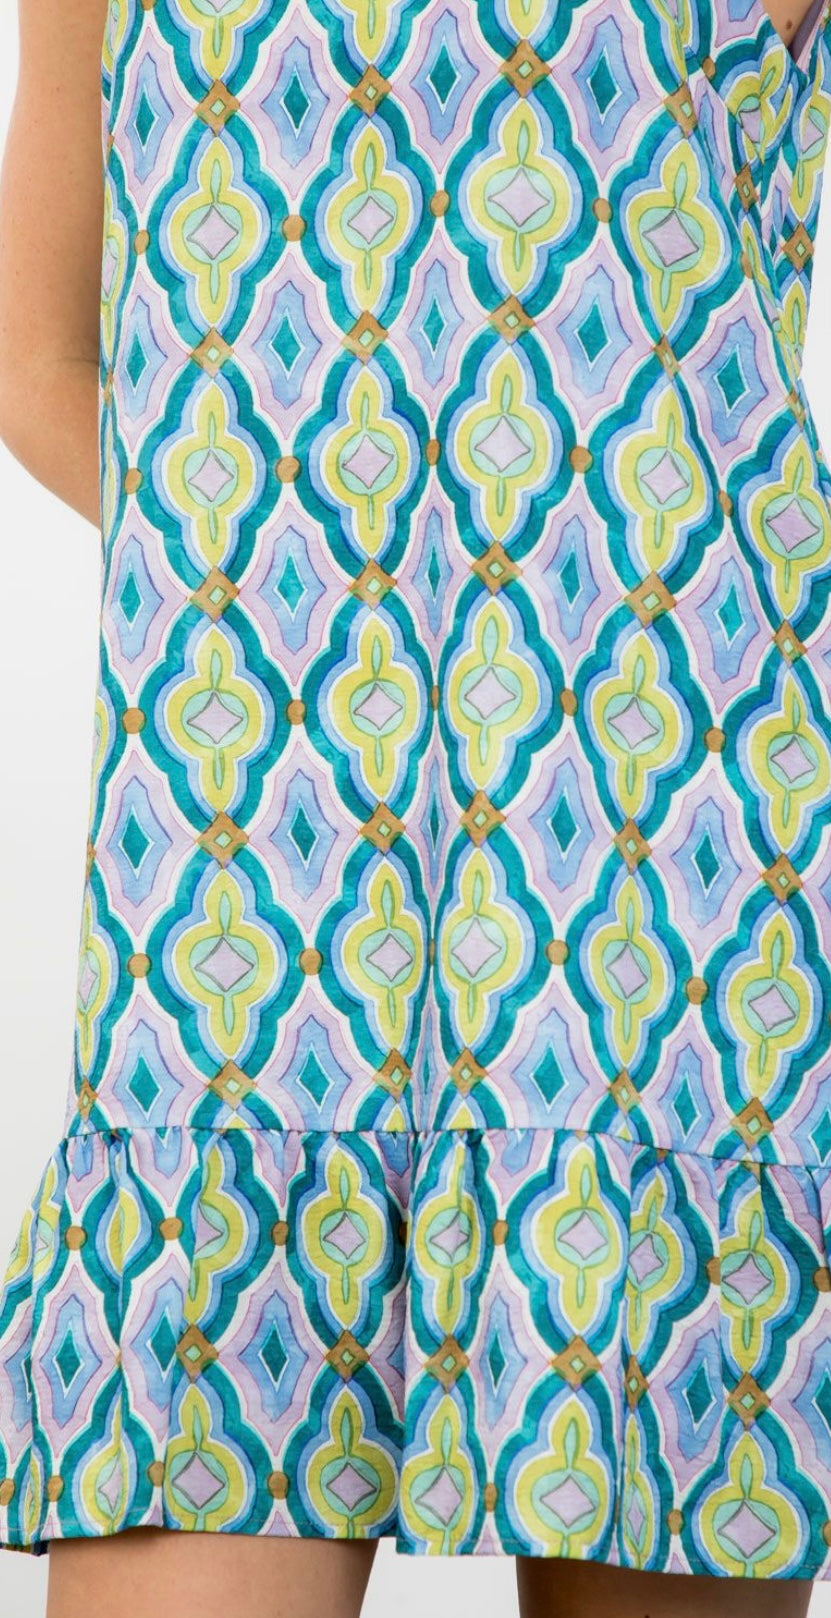 Sleeveless Pattern Dress